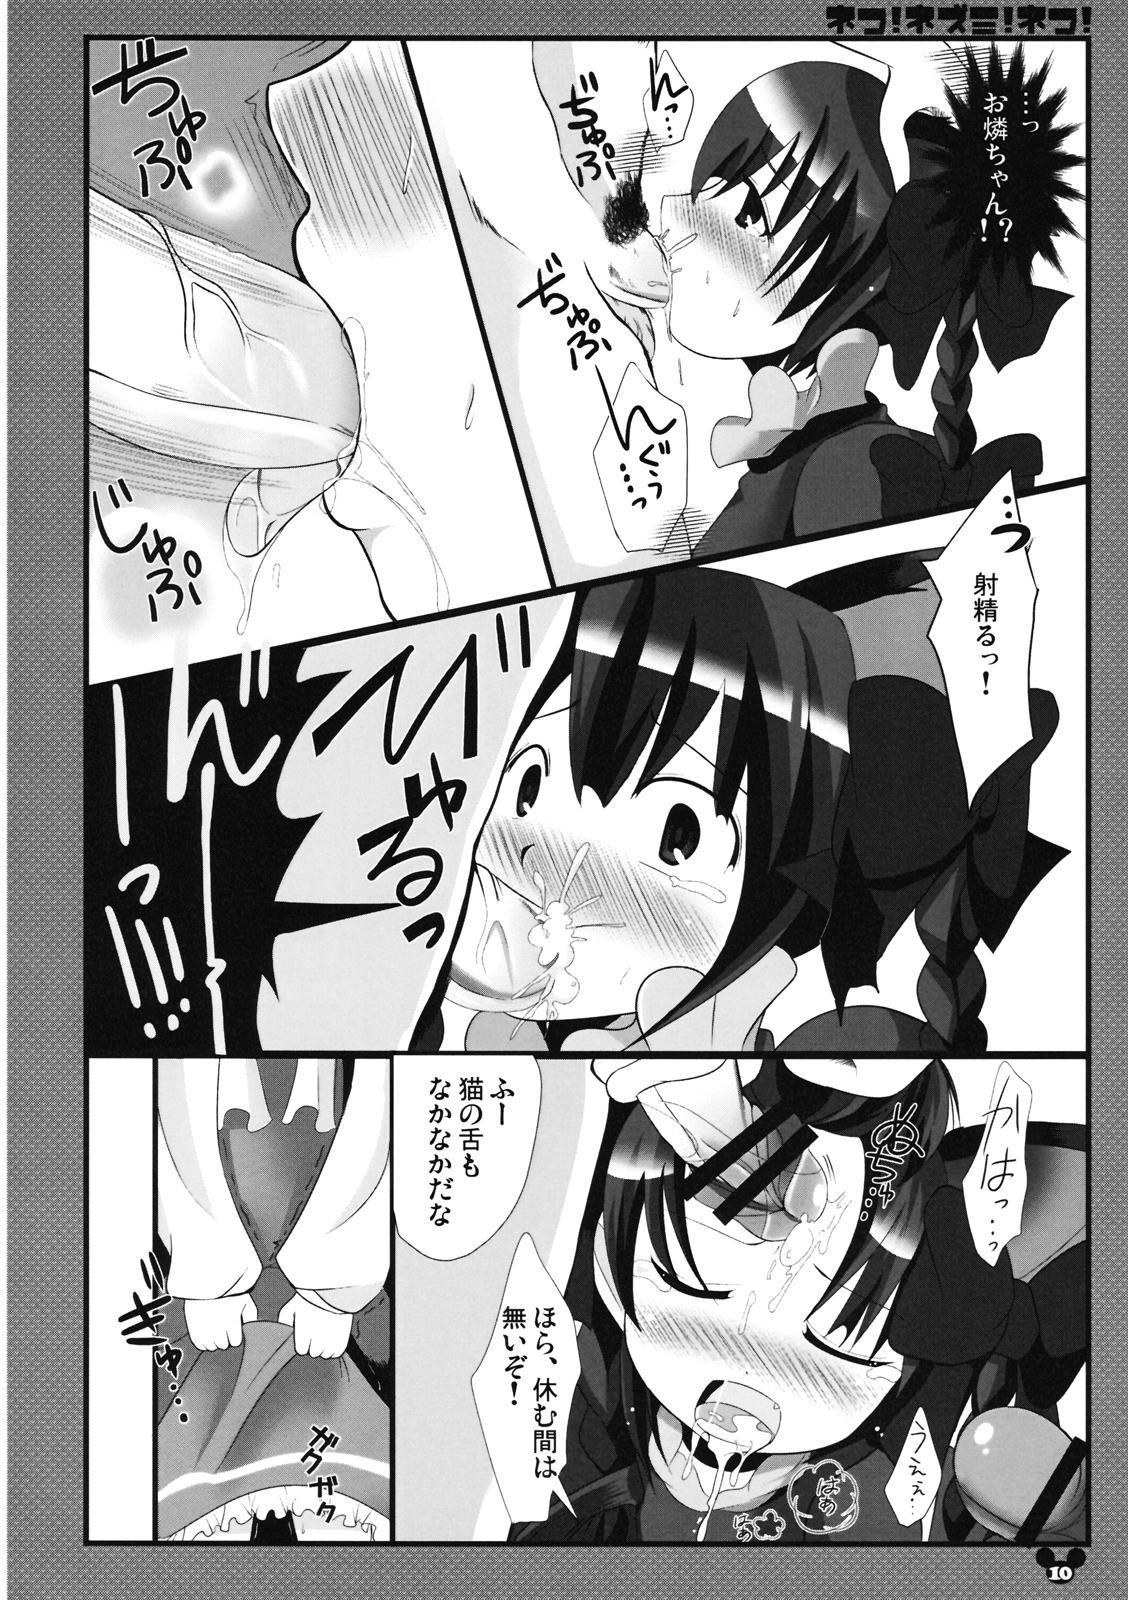 Gaping Neko! Nezumi! Neko! - Touhou project Free Amatuer Porn - Page 10